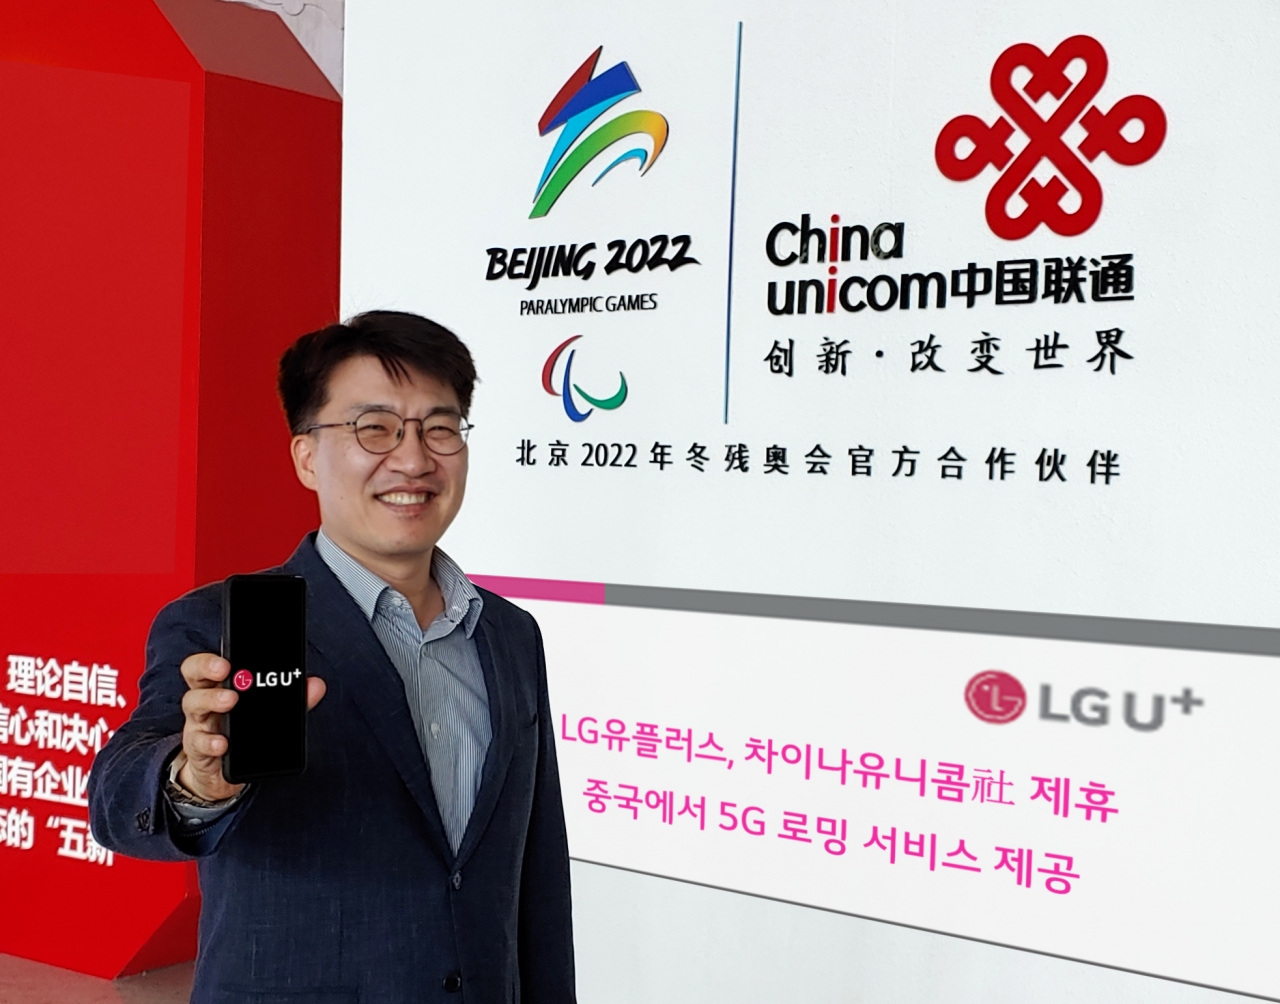 LG유플러스가 중국 이동통신 사업자인 차이나유니콤과 제휴를 맺고 16일부터 5G 로밍 서비스를 제공한다. / 사진=LG유플러스